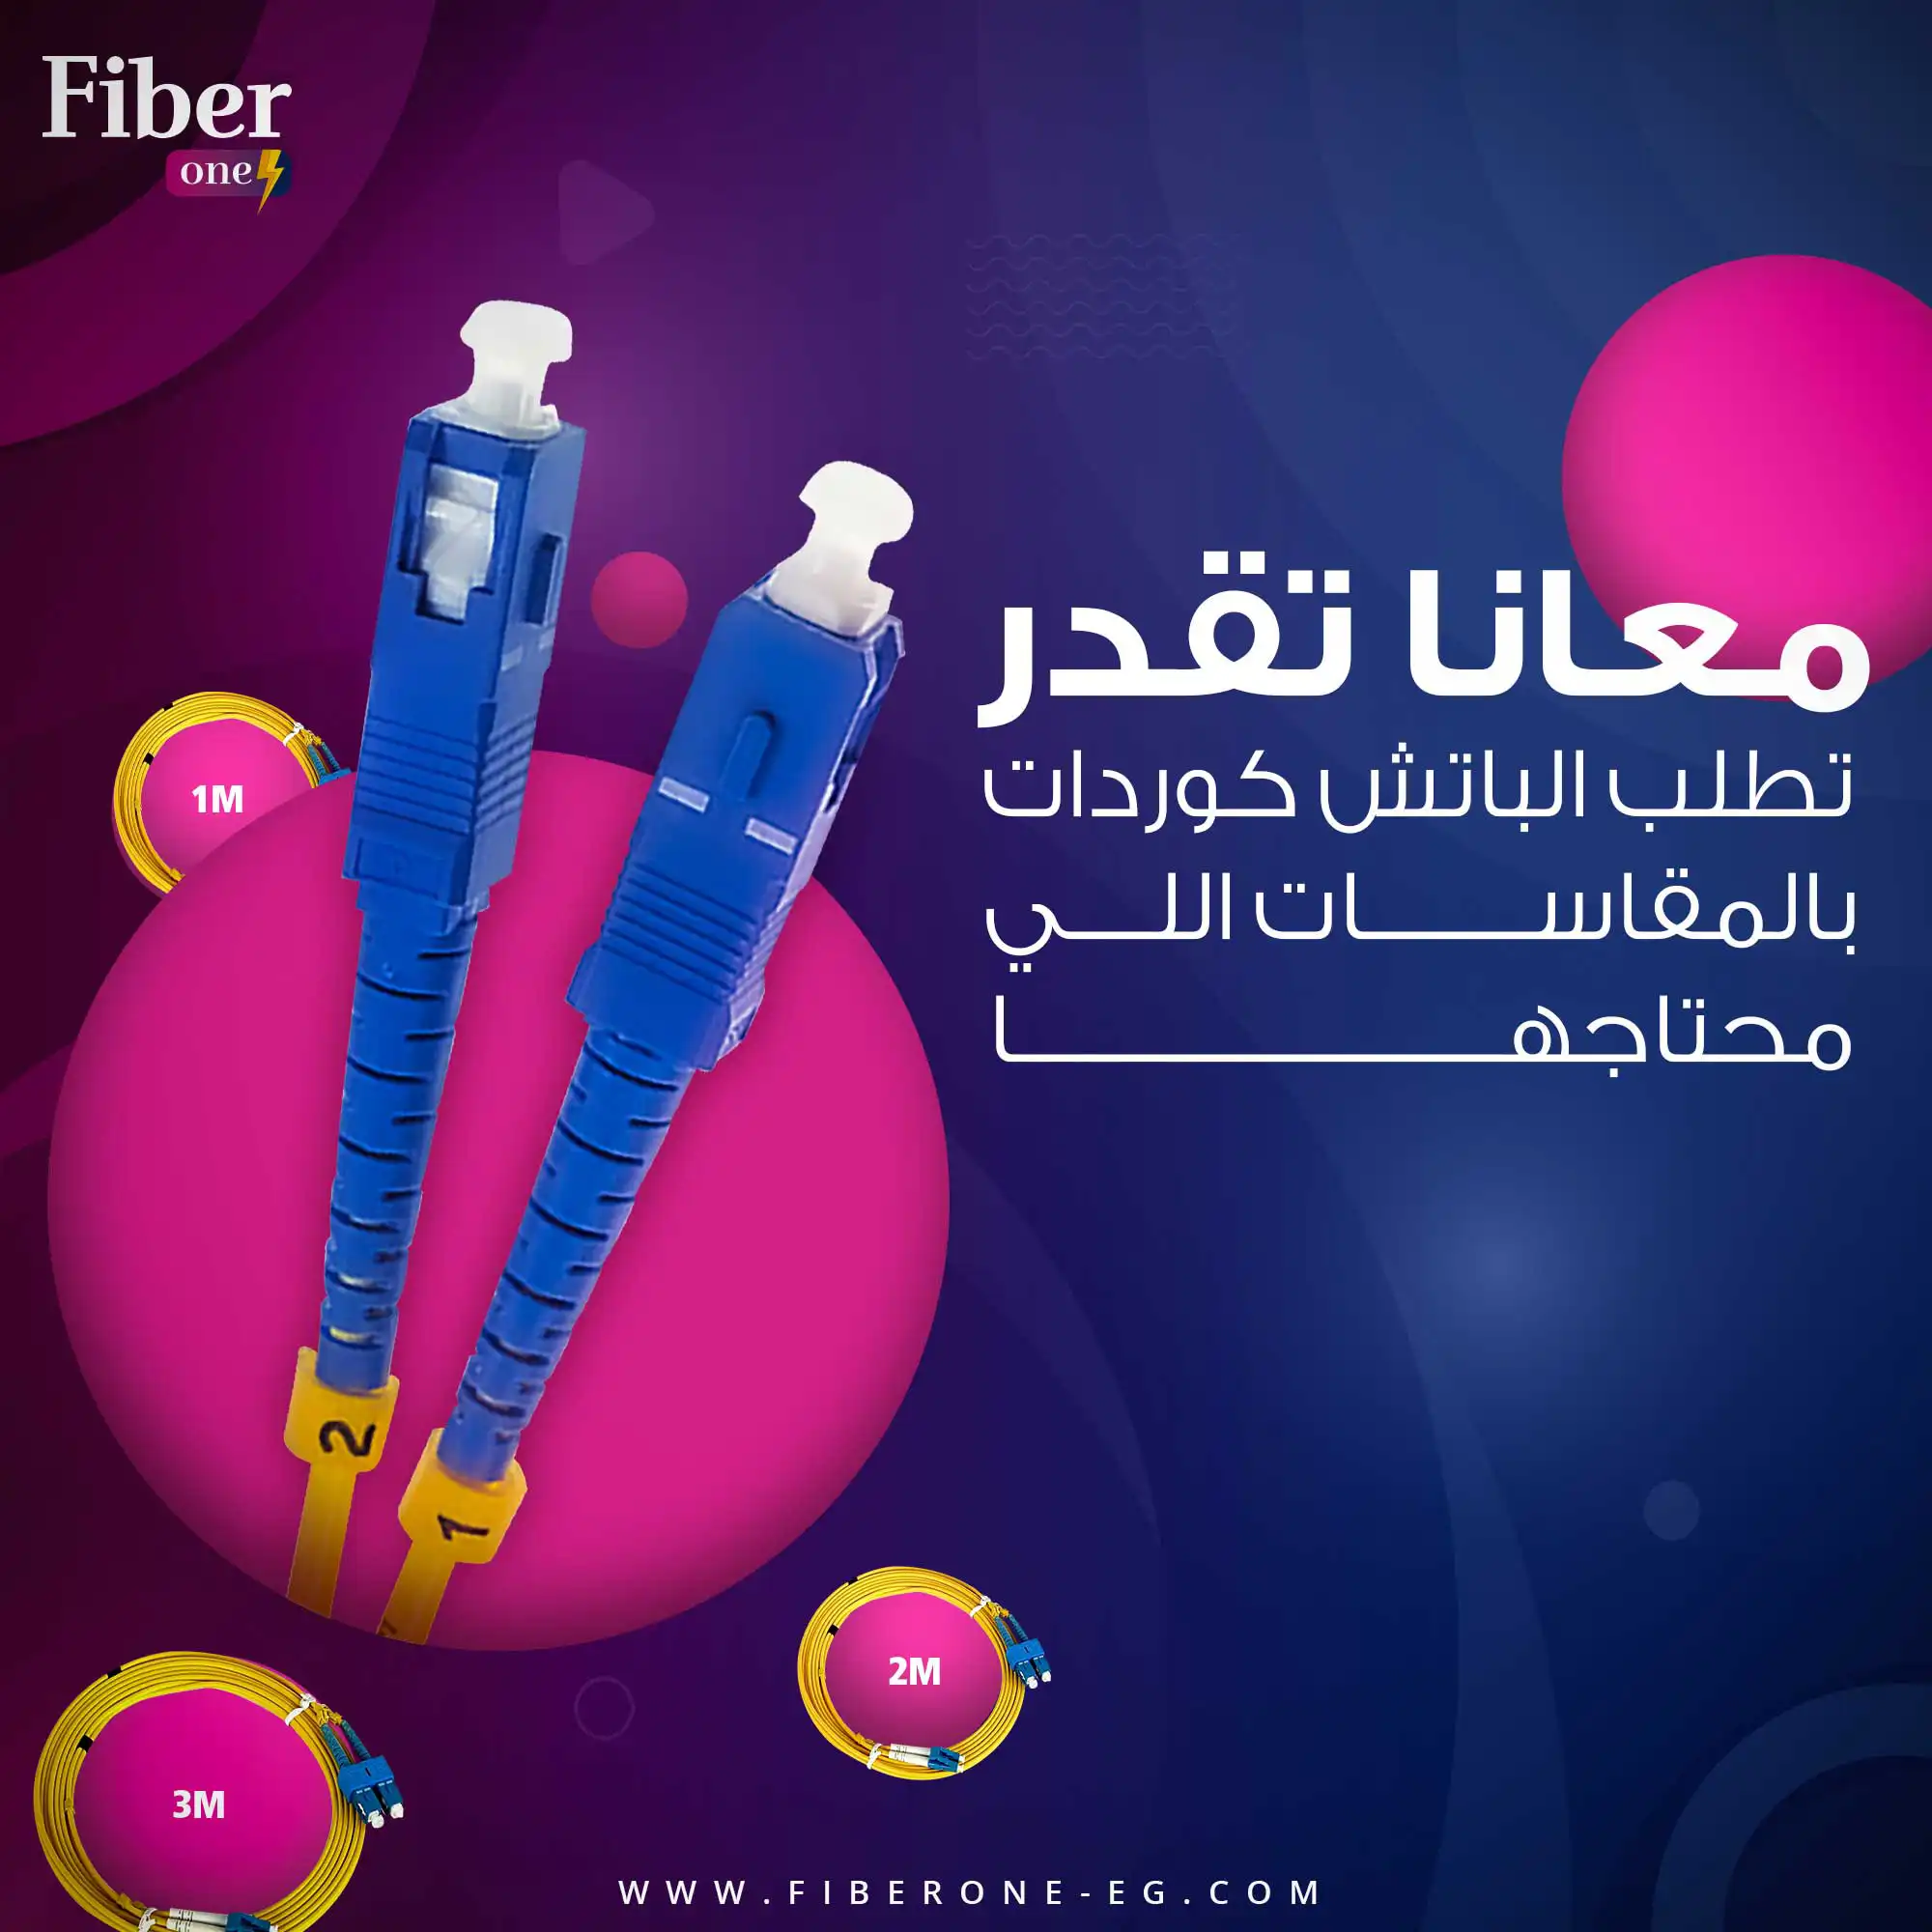 fiber one social media 9